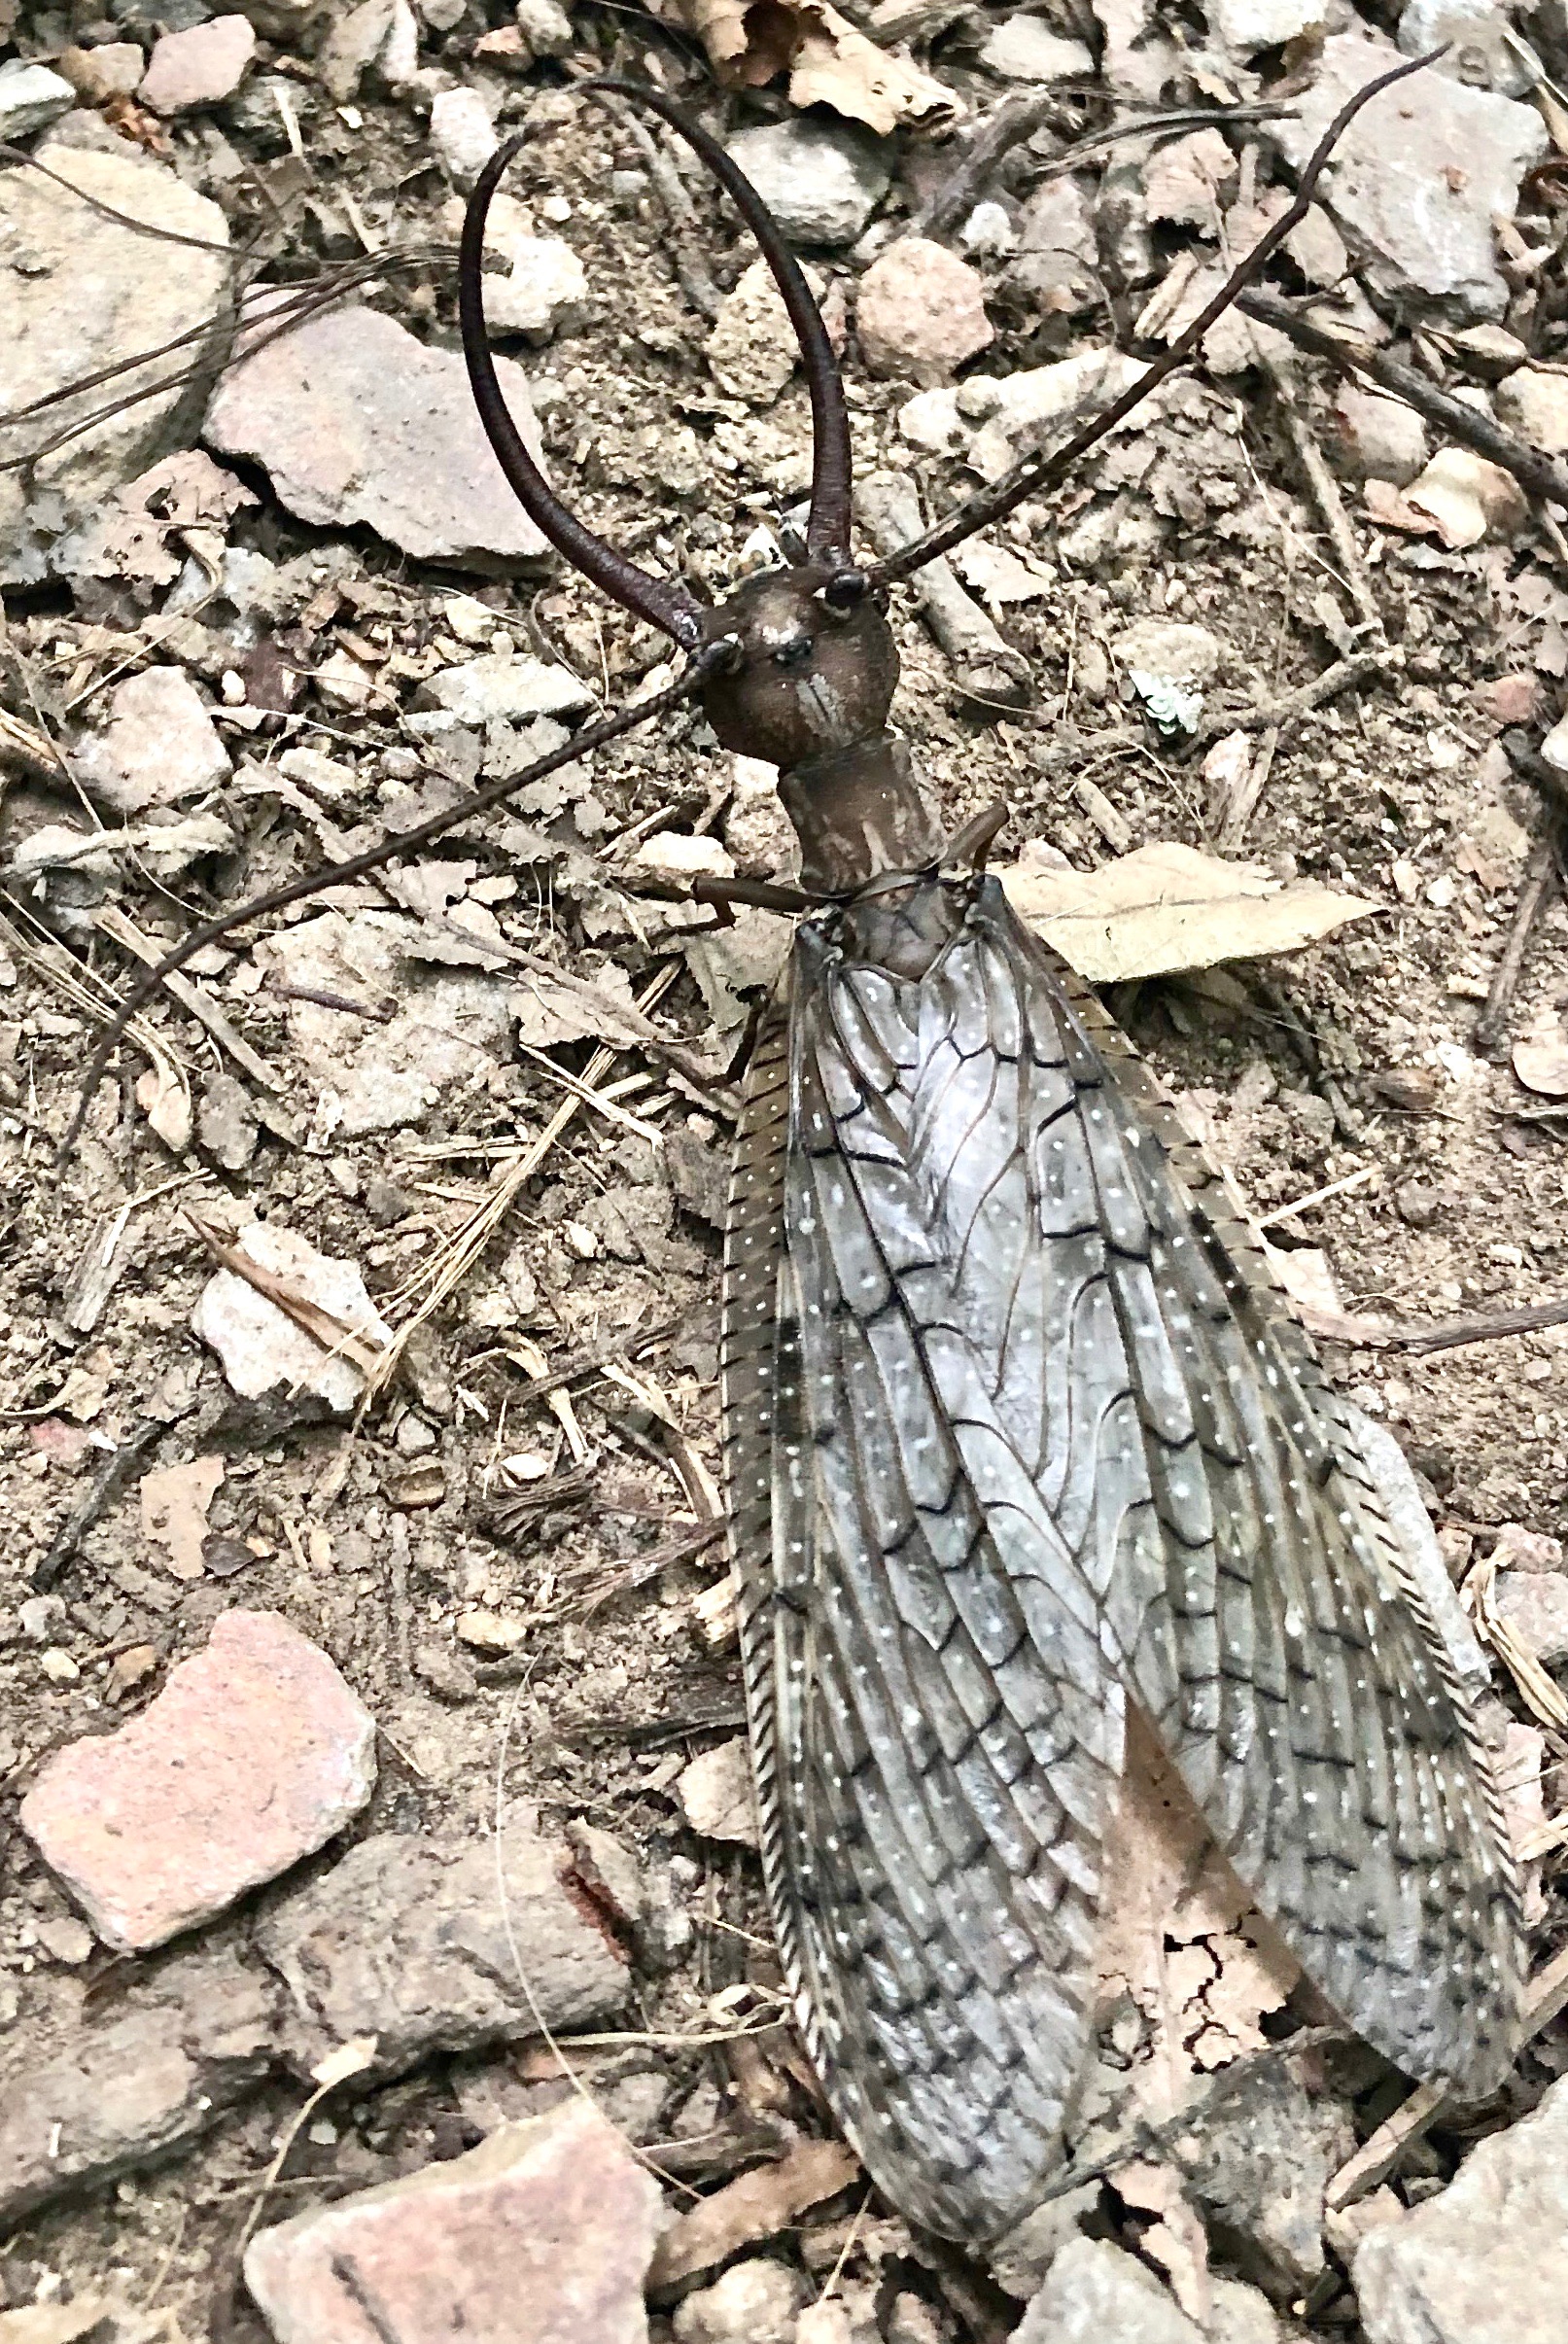 Eastern Dobsonfly, male, Corydalus cornutus